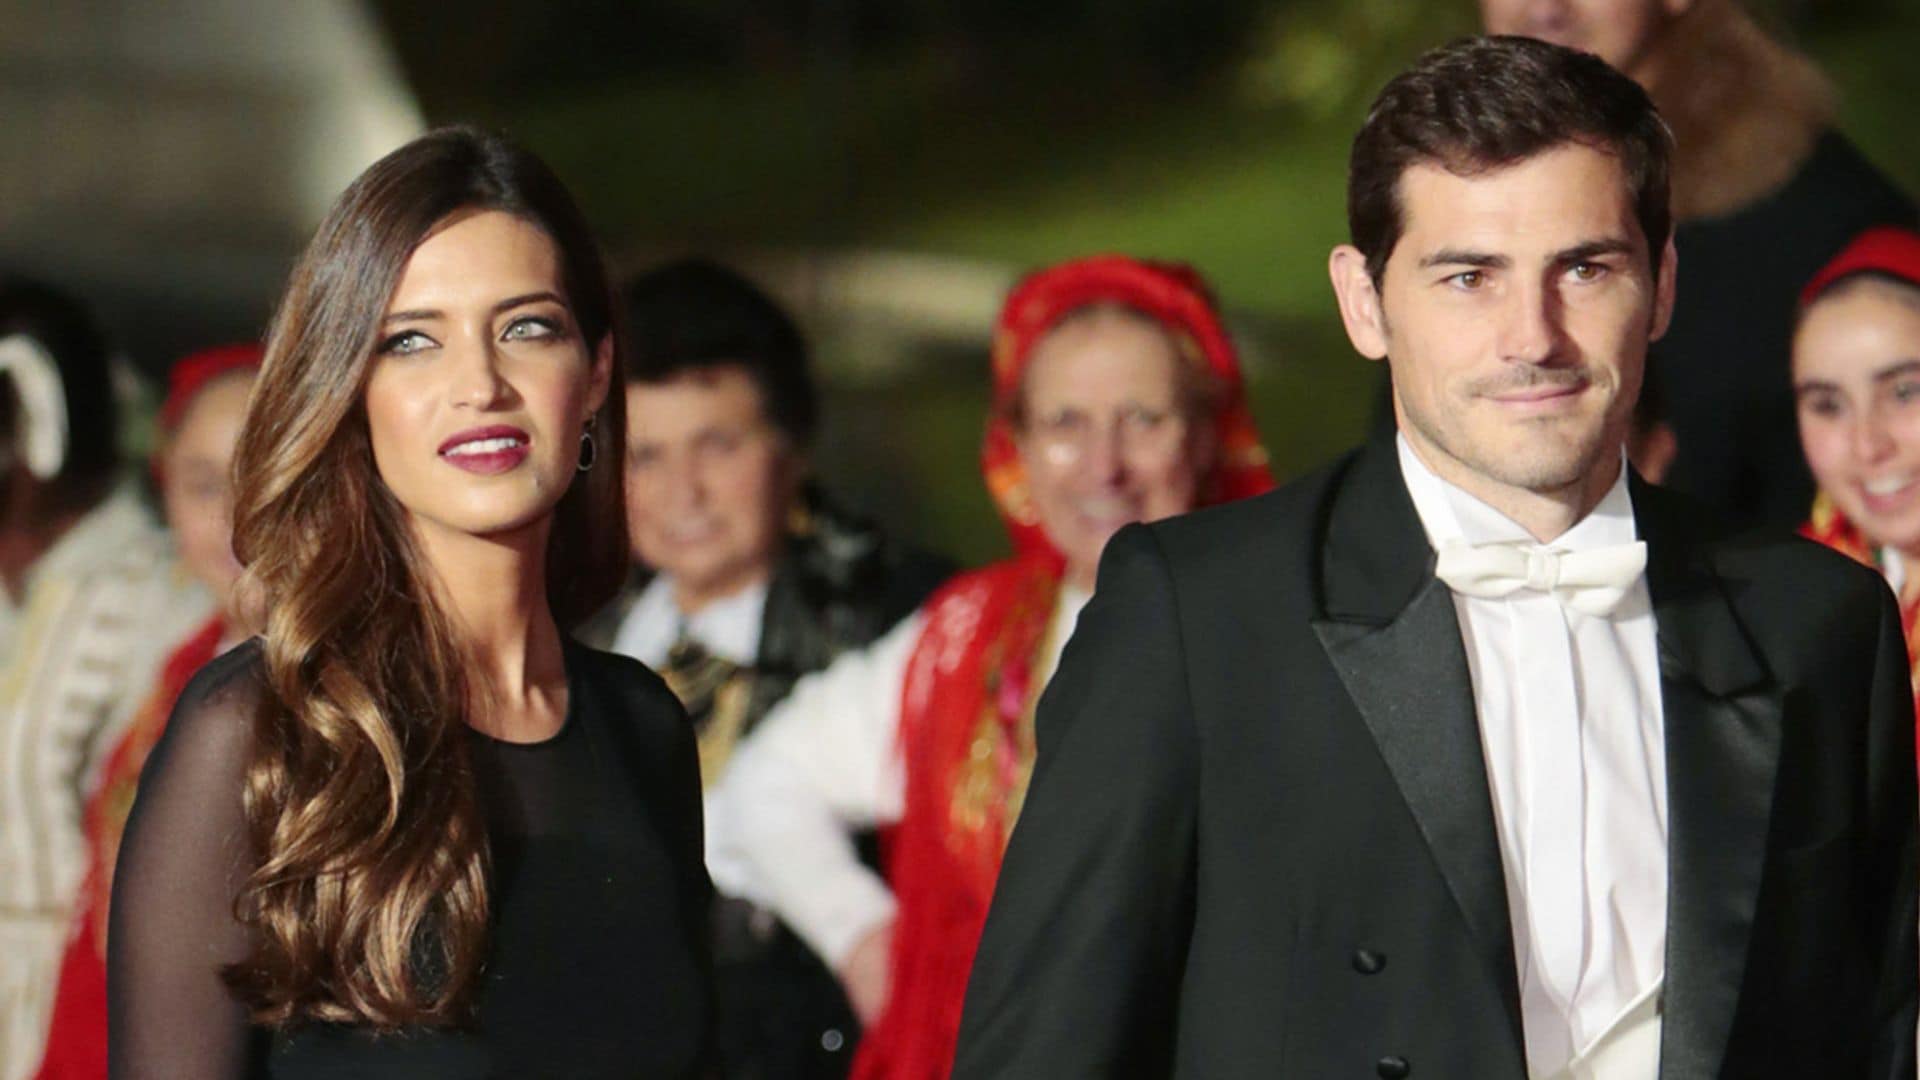 La ruptura de Iker Casillas y Sara Carbonero, protagonista de la prensa internacional